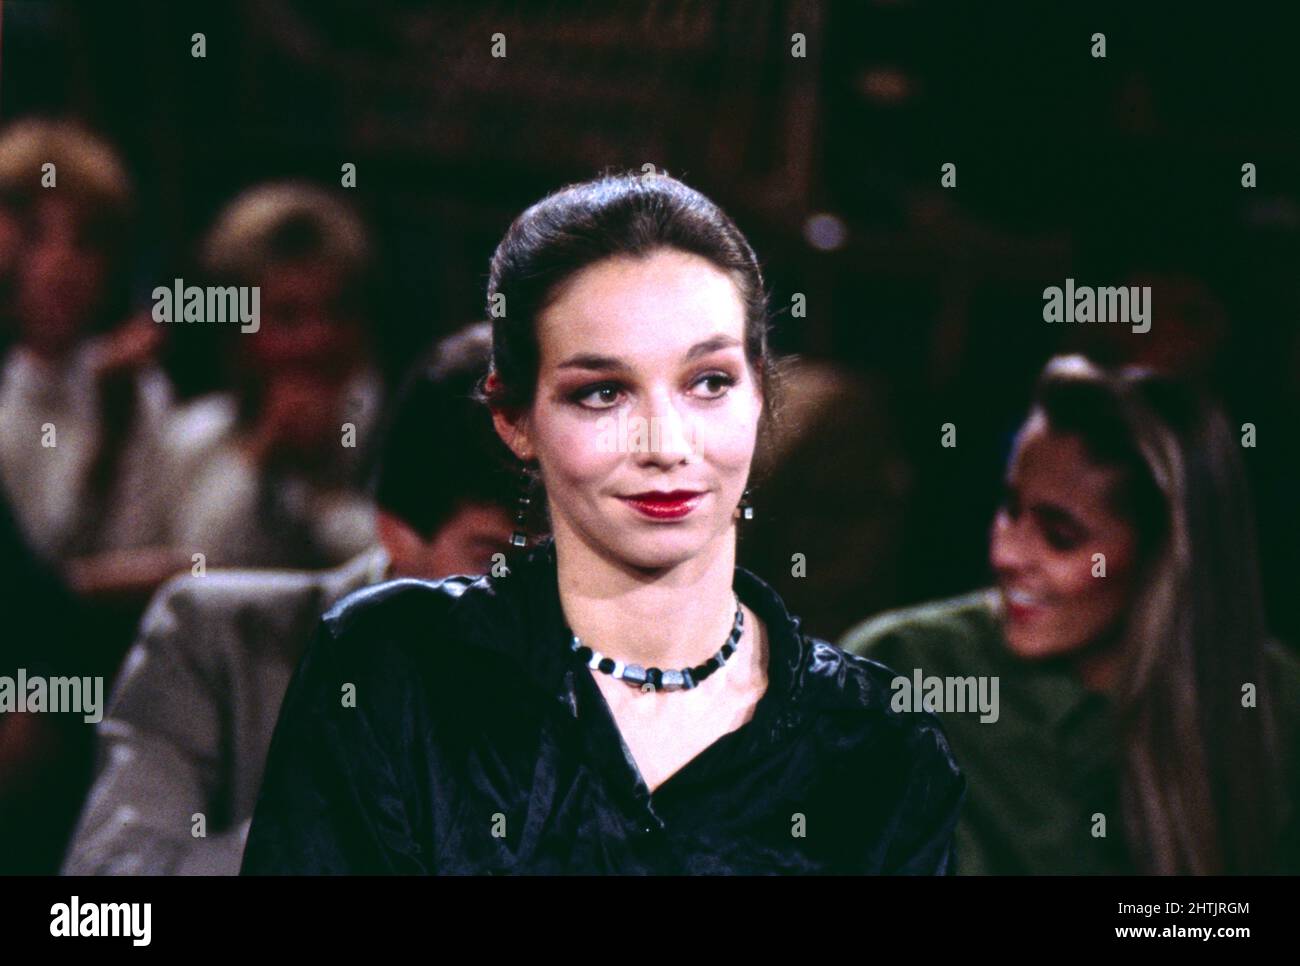 Nina Corti, Schweizer Flamenco Tänzerin, hier in der NDR Talkshow: III nach Neun, 1990. Nina Corti, Swiss Flamenco dancer, here in the NDR TV Talkshow: 3 nach Neun, 1990. Stock Photo